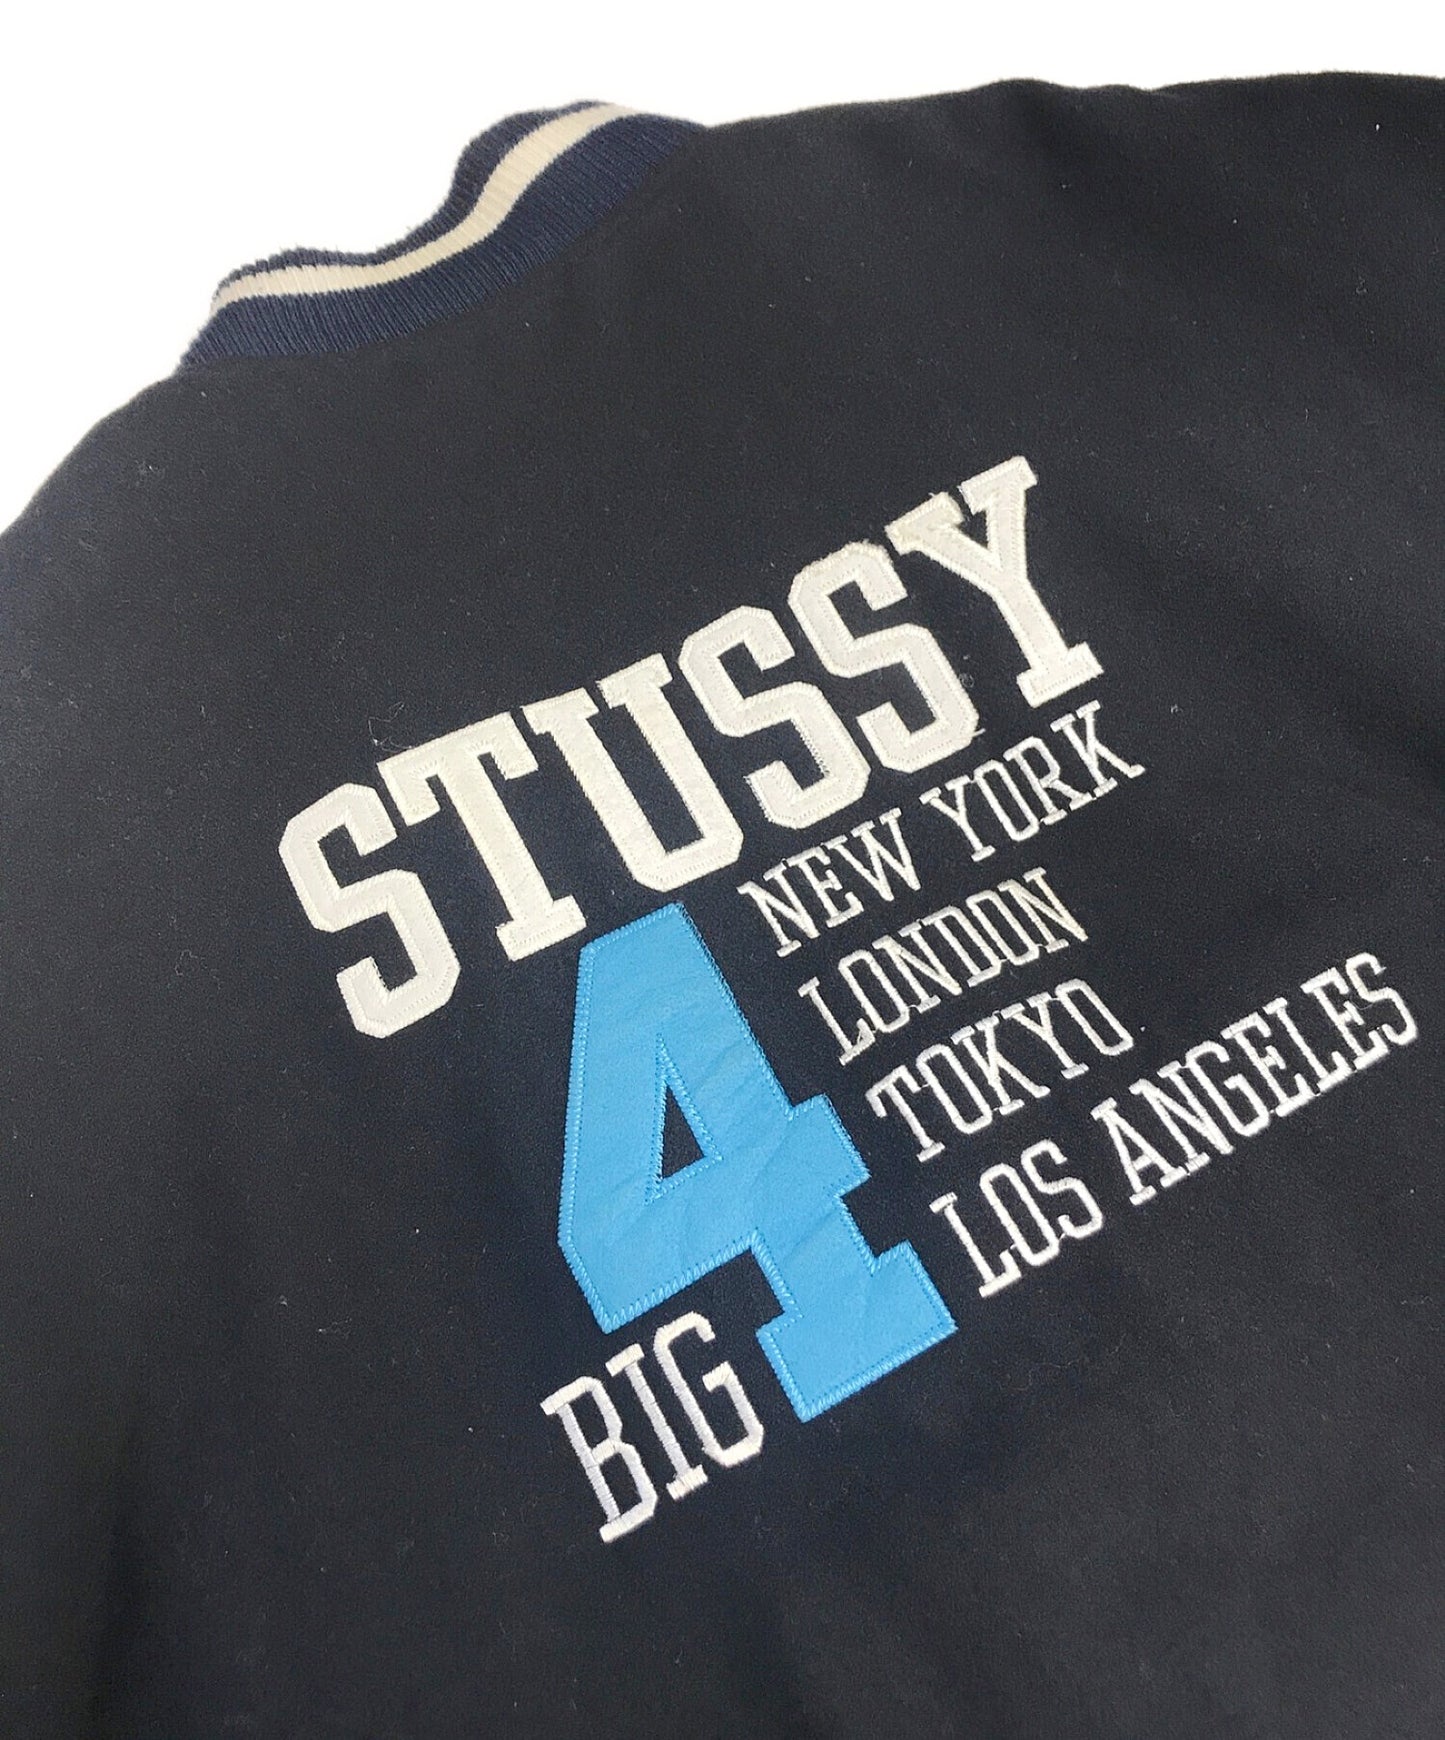 [Pre-owned] stussy BIG4 stadium jacket